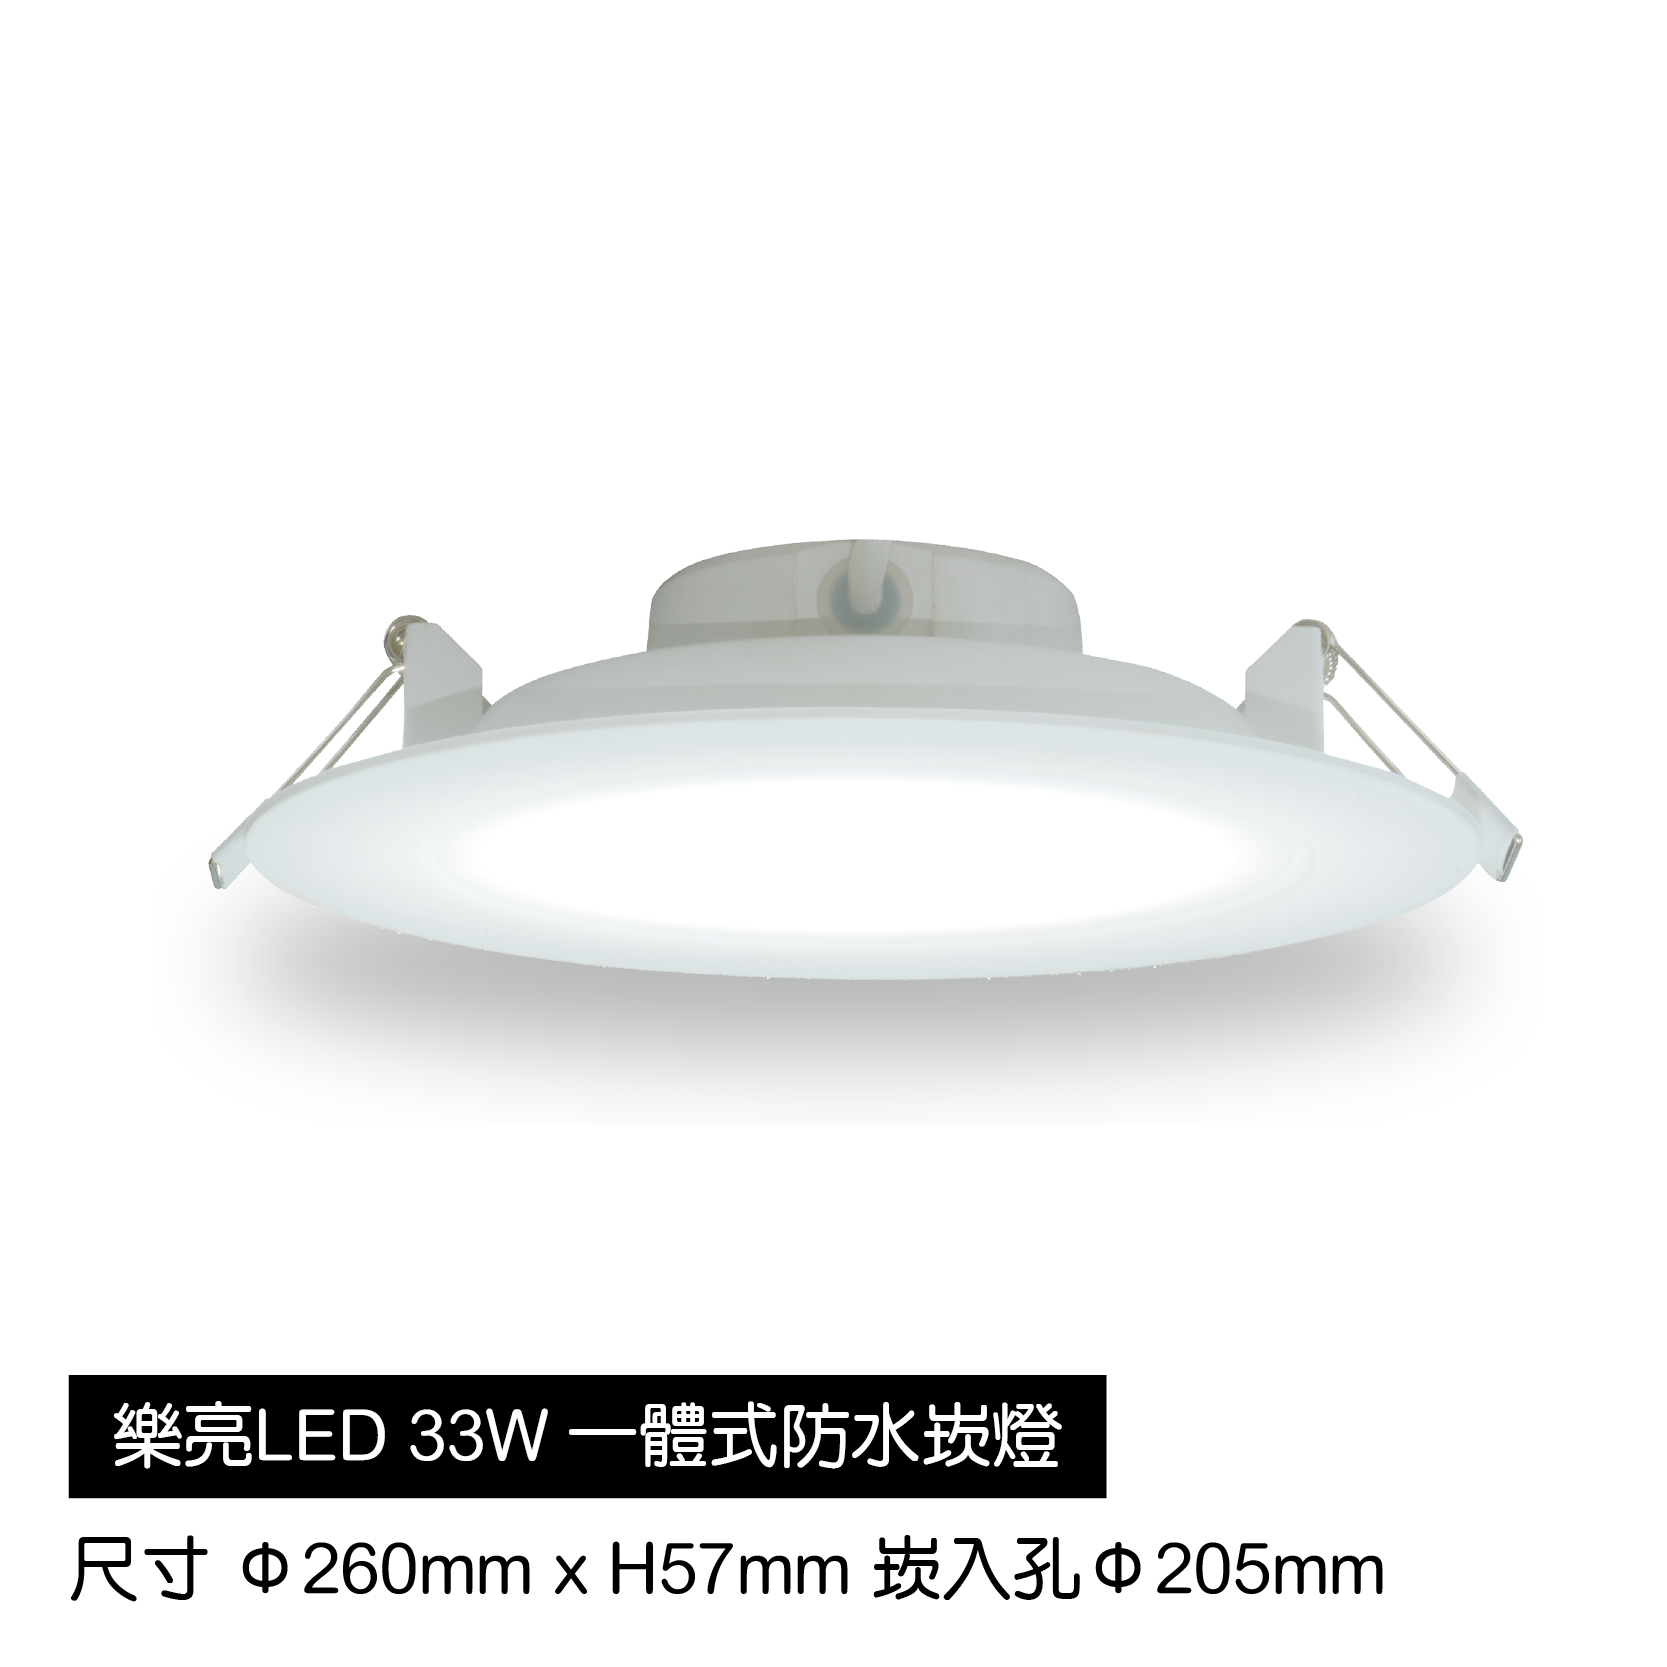 LED-33W一體式防水崁燈